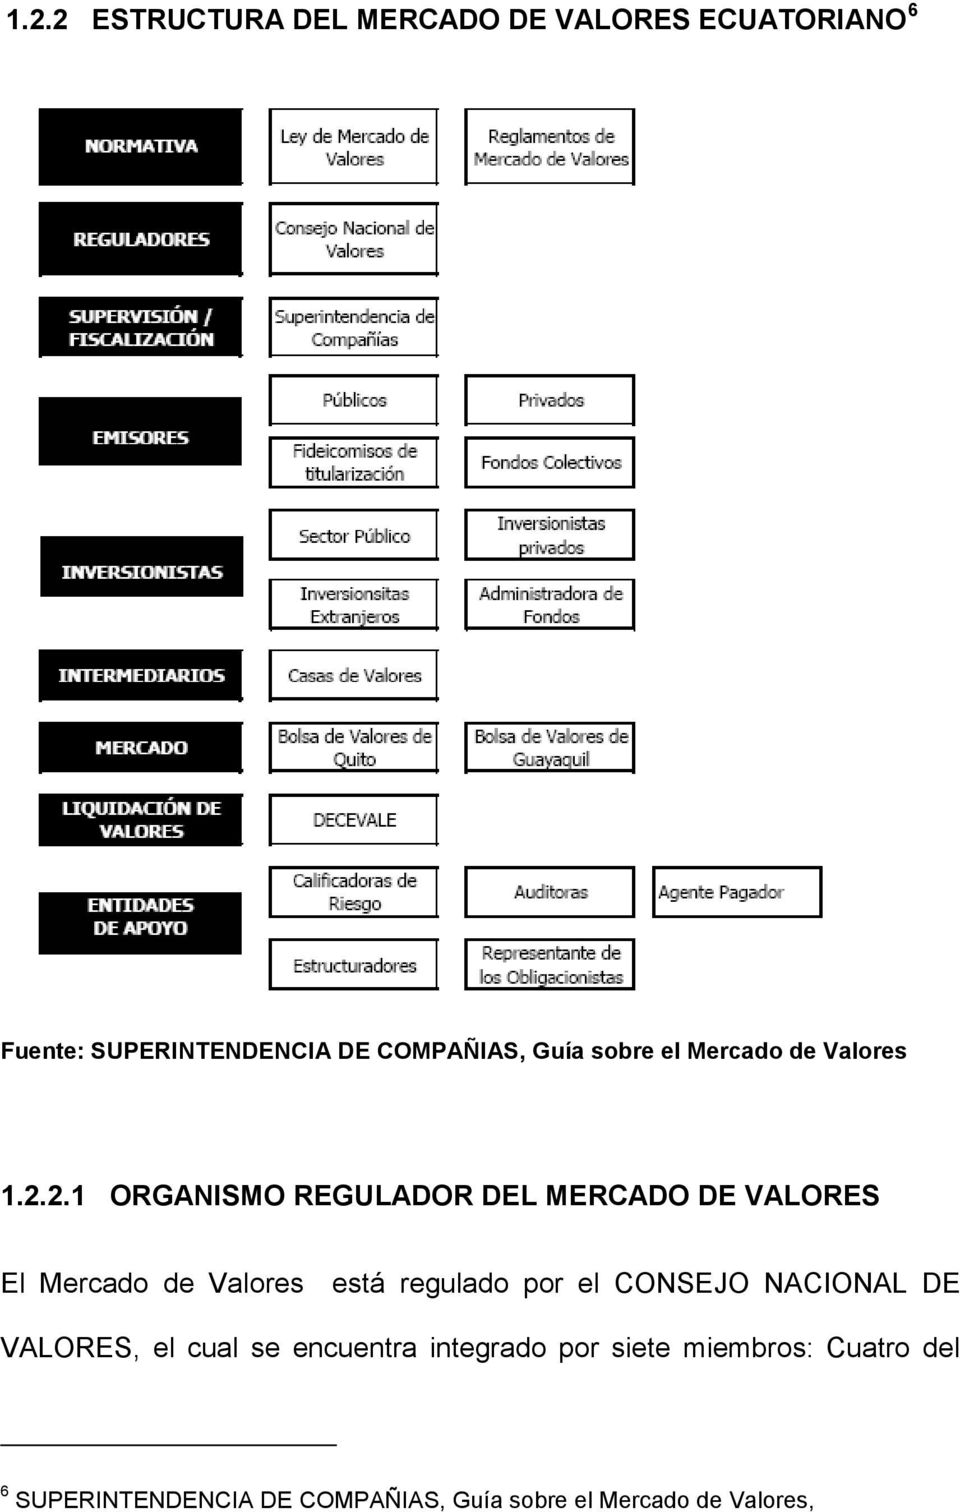 2.1 ORGANISMO REGULADOR DEL MERCADO DE VALORES El Mercado de Valores está regulado por el